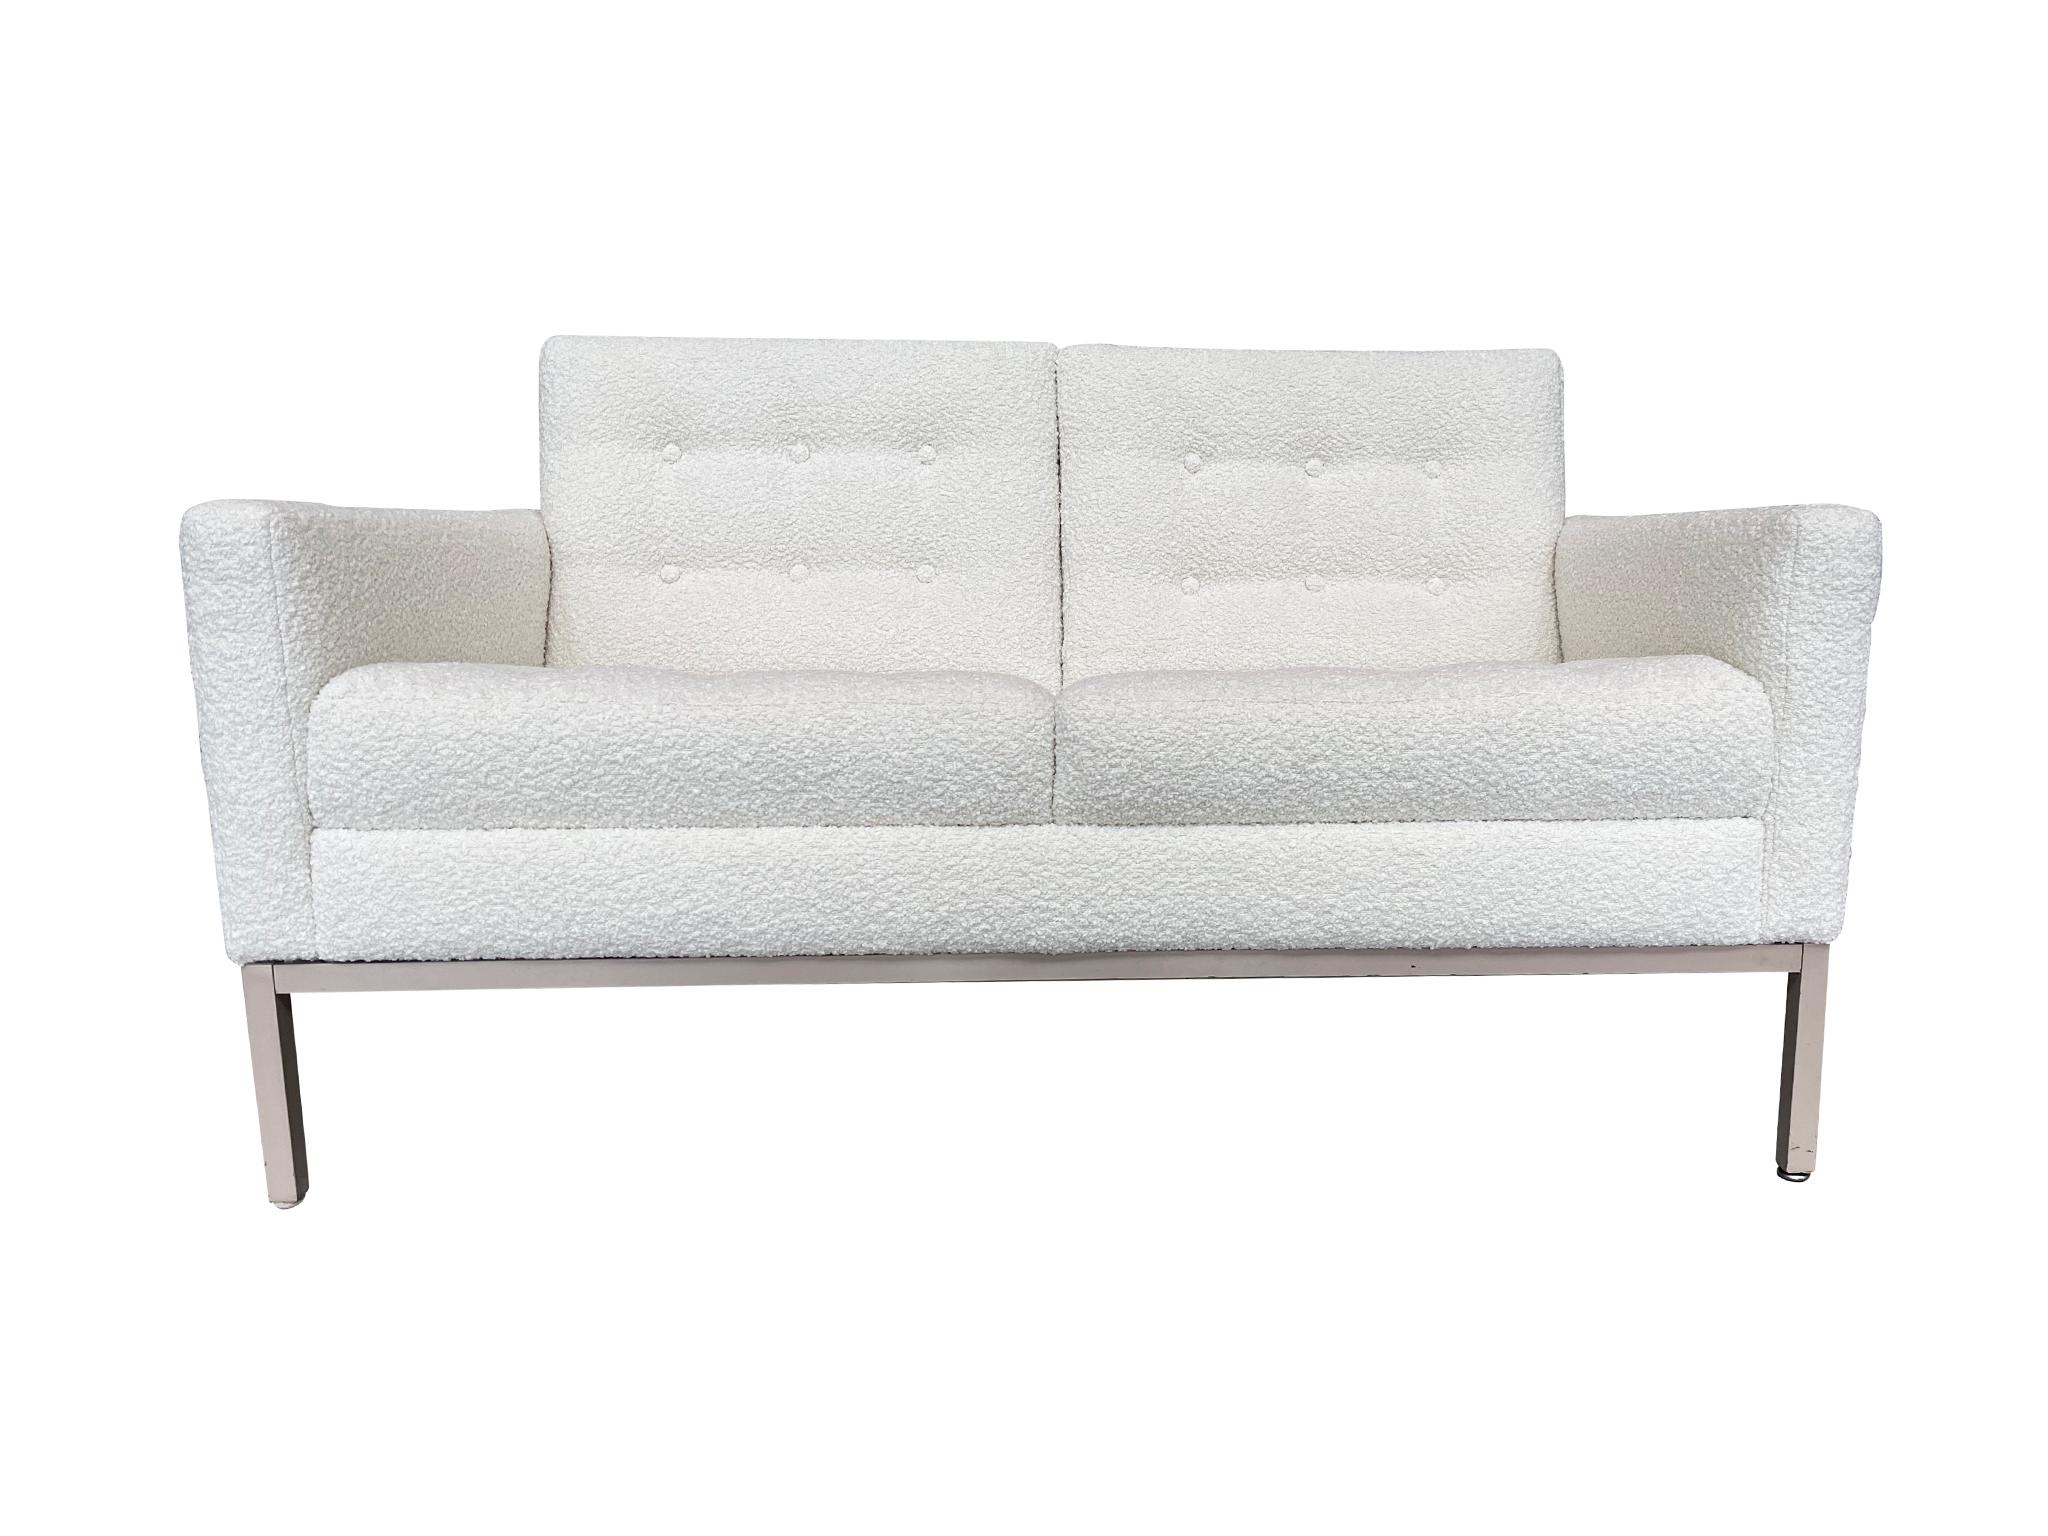 Fabriqué à l'origine dans les années 1970, ce canapé à deux places de Patrician Furniture Company s'inspire de l'emblématique canapé Florence Knoll, avec sa combinaison de lignes angulaires et douces. Le canapé a été récemment retapissé en chenille